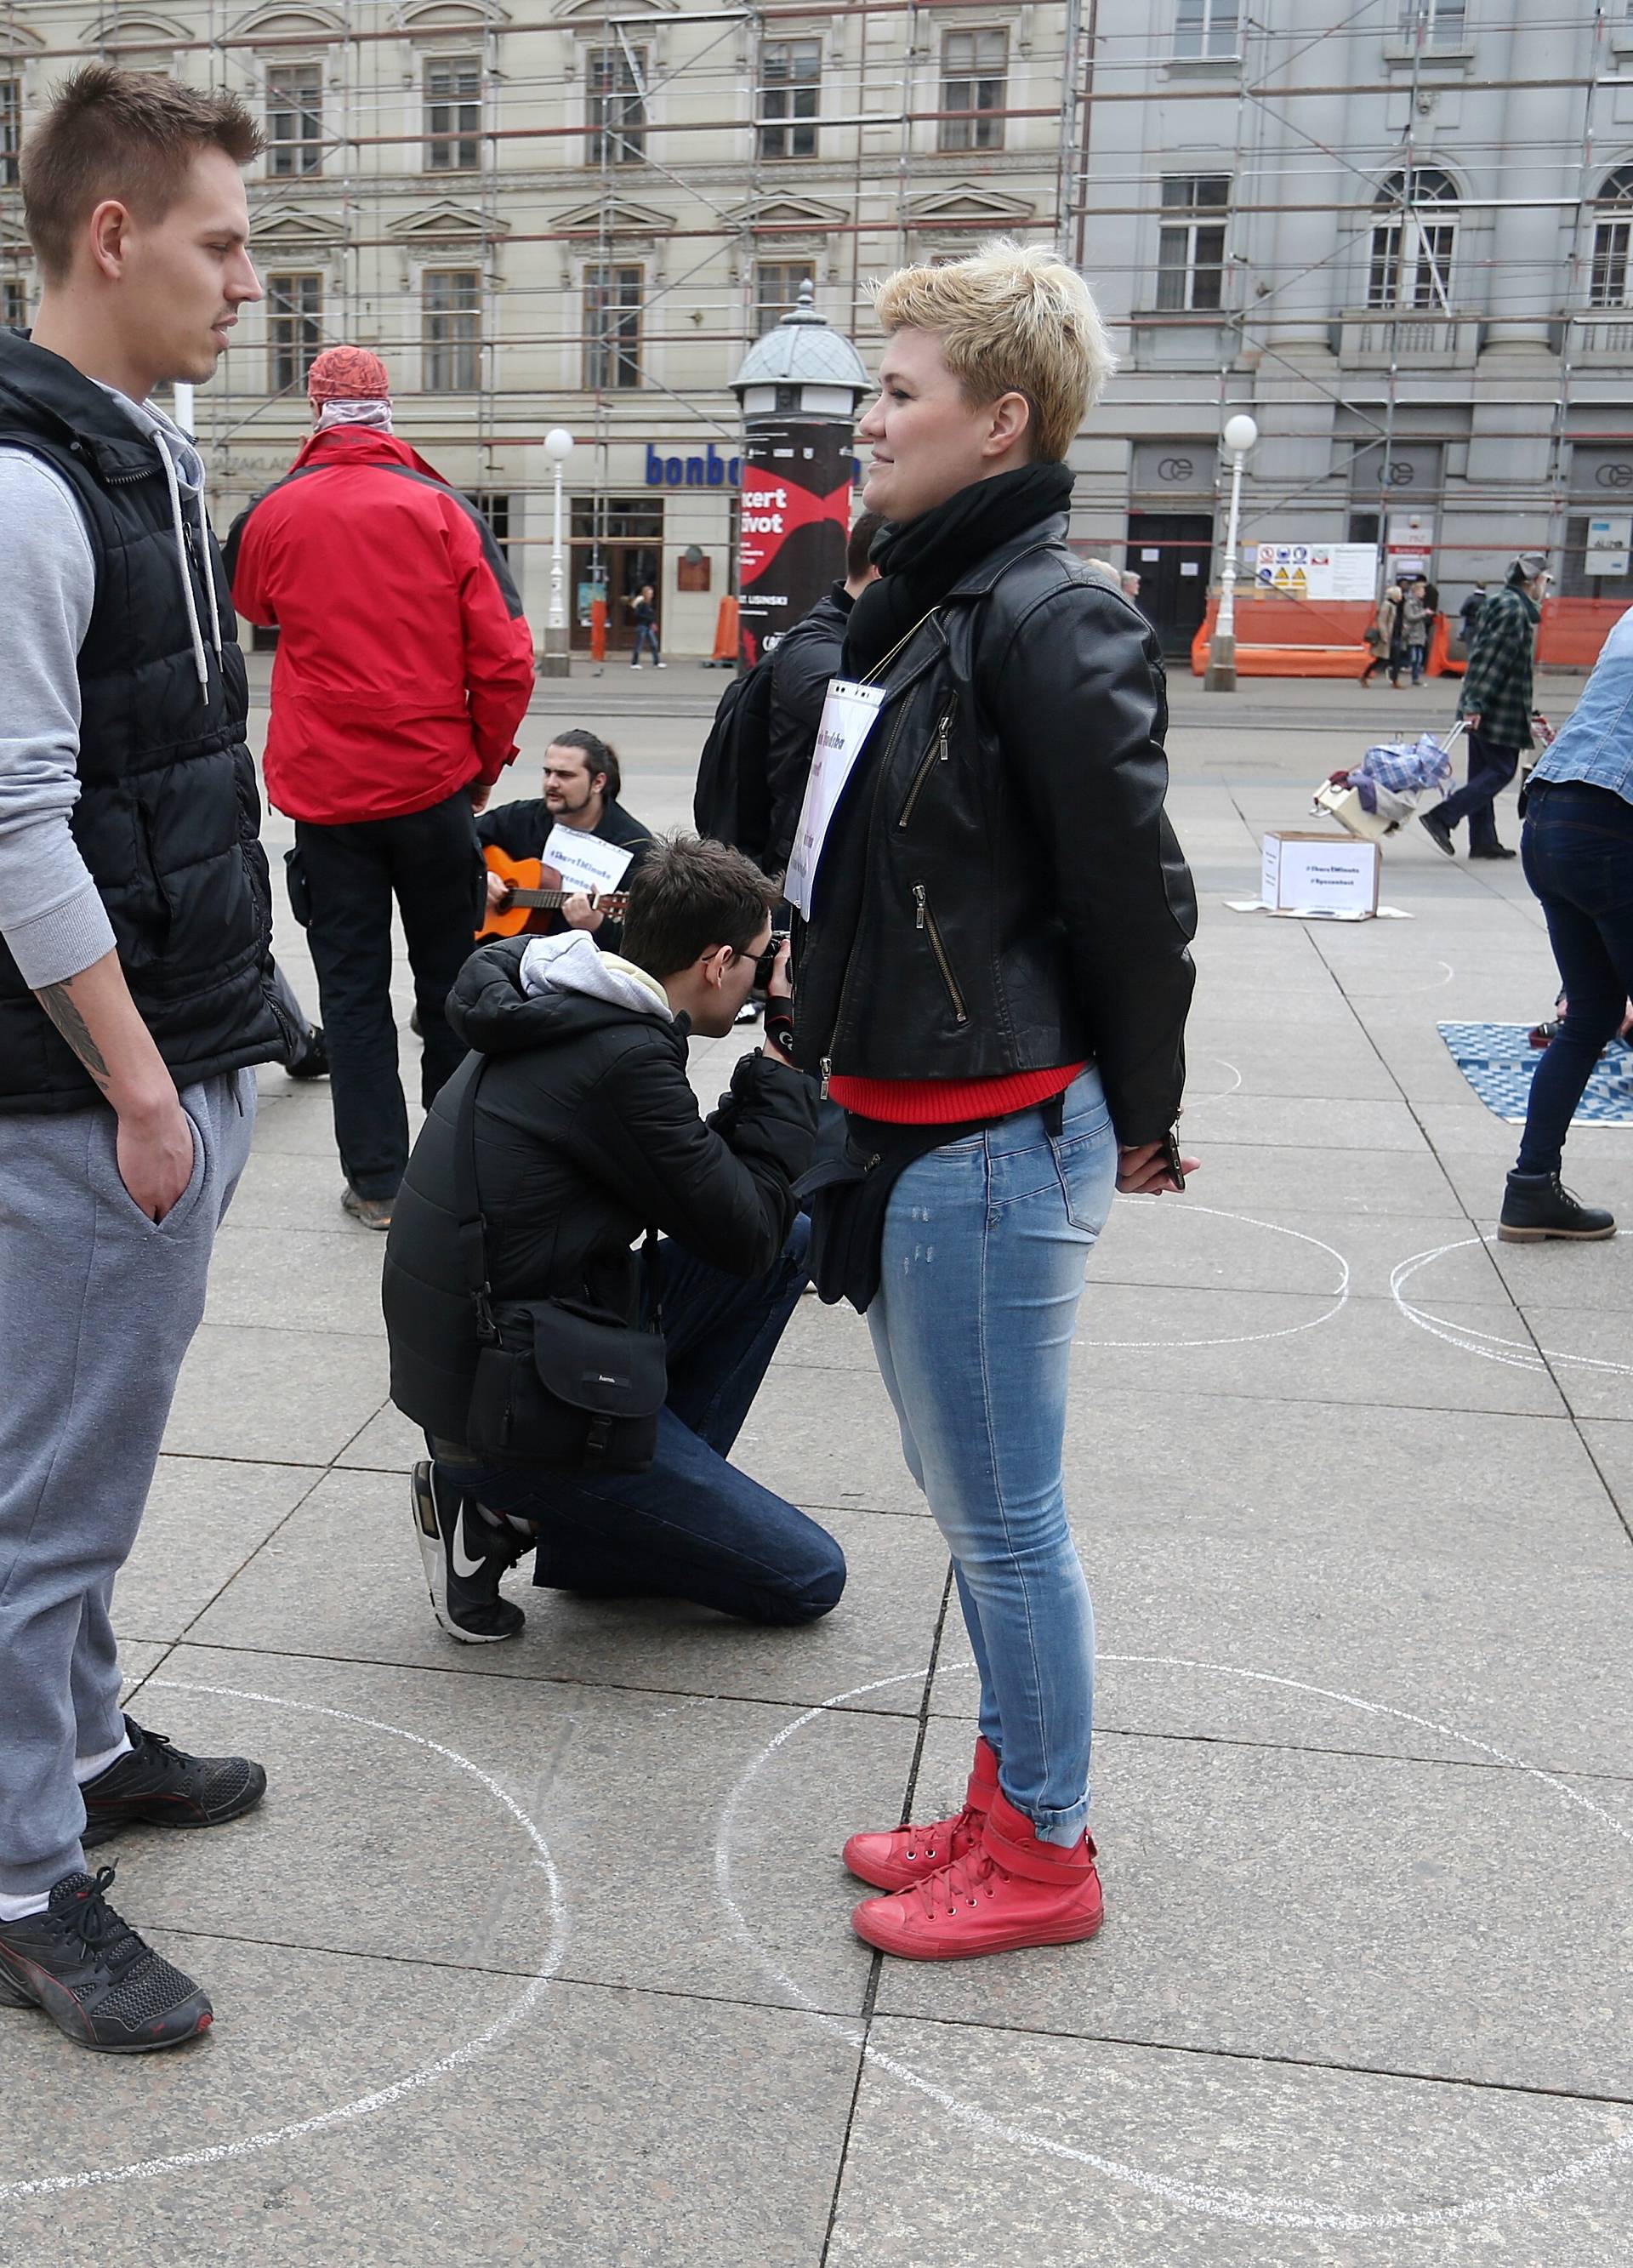 Neobičan eksperiment na Trgu: Potpuni stranci se gledali u oči